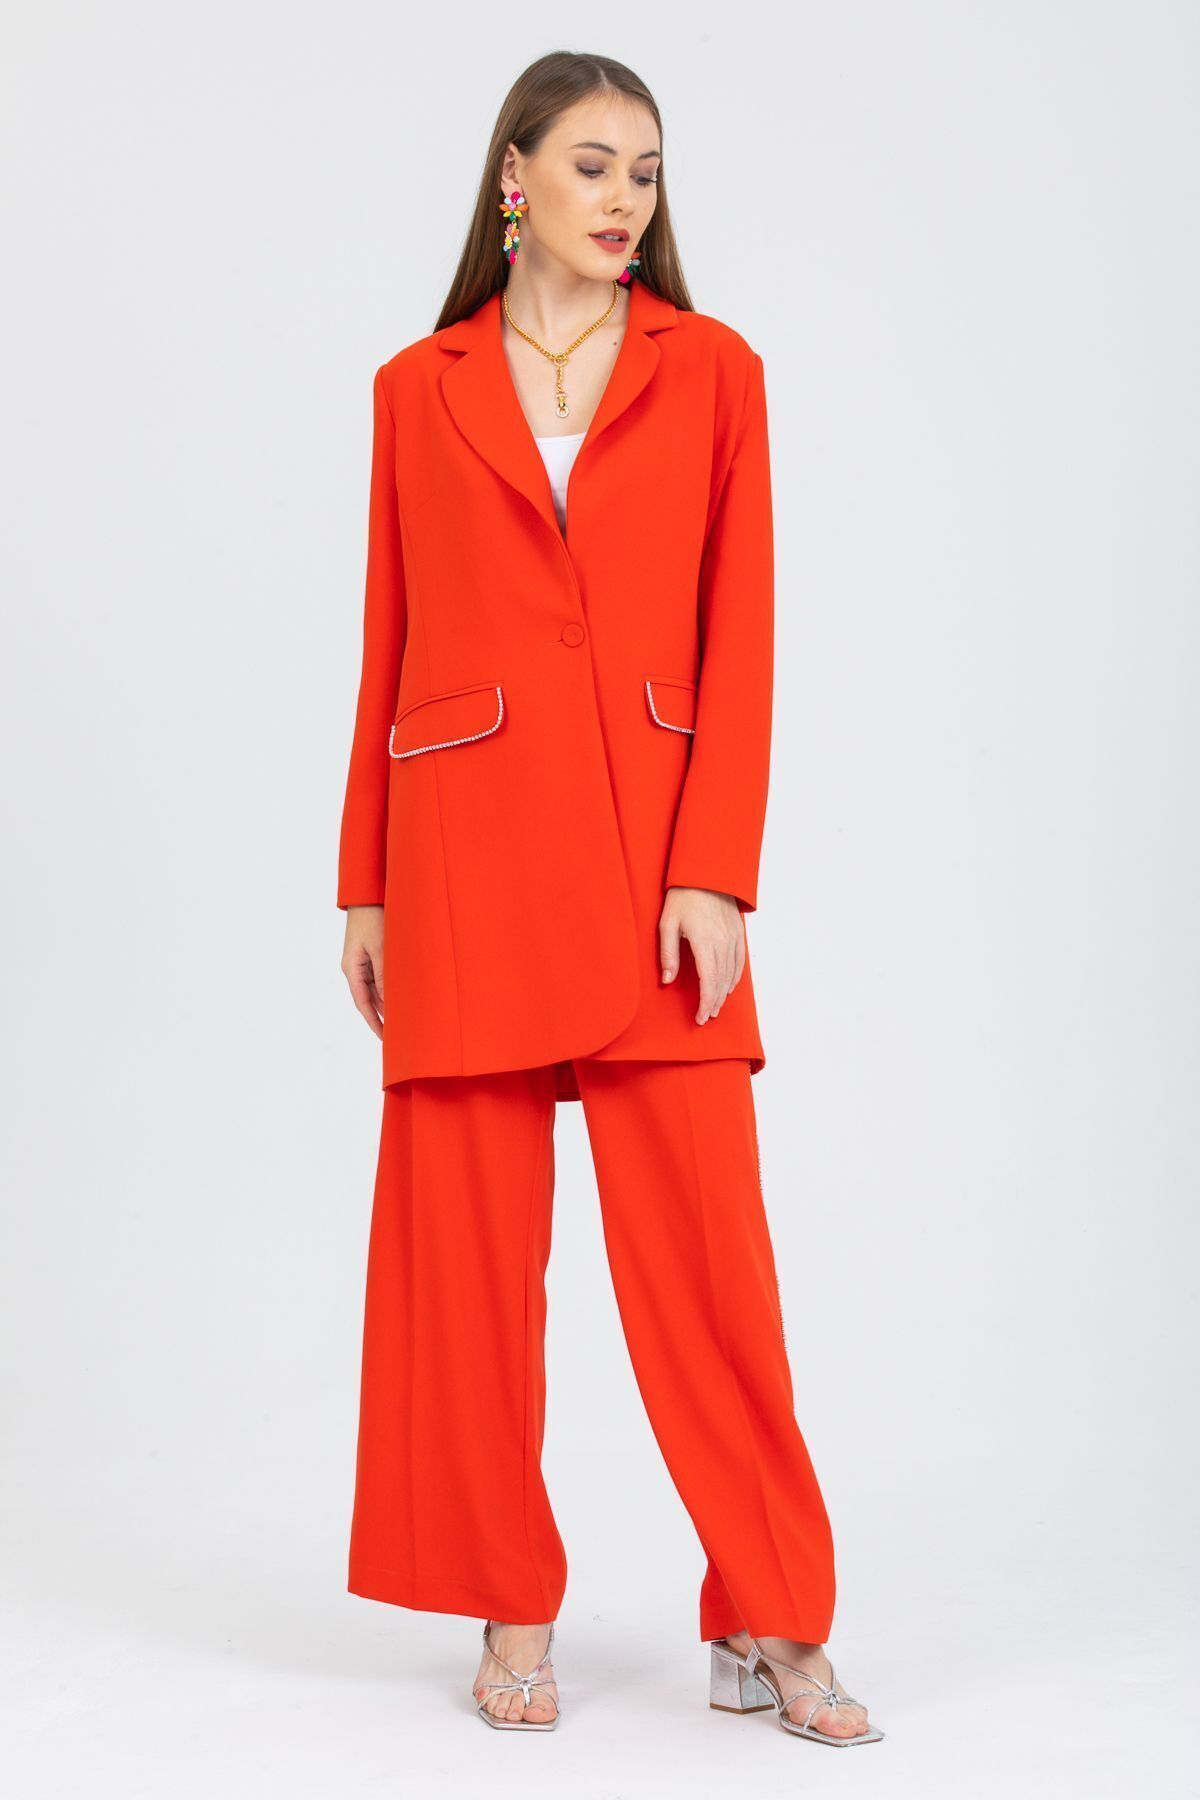 AMAKI MAZAGO Kadın Takım Elbise Ceket Ve Pantolon sırt dekolteli özel taşlı turuncu renk